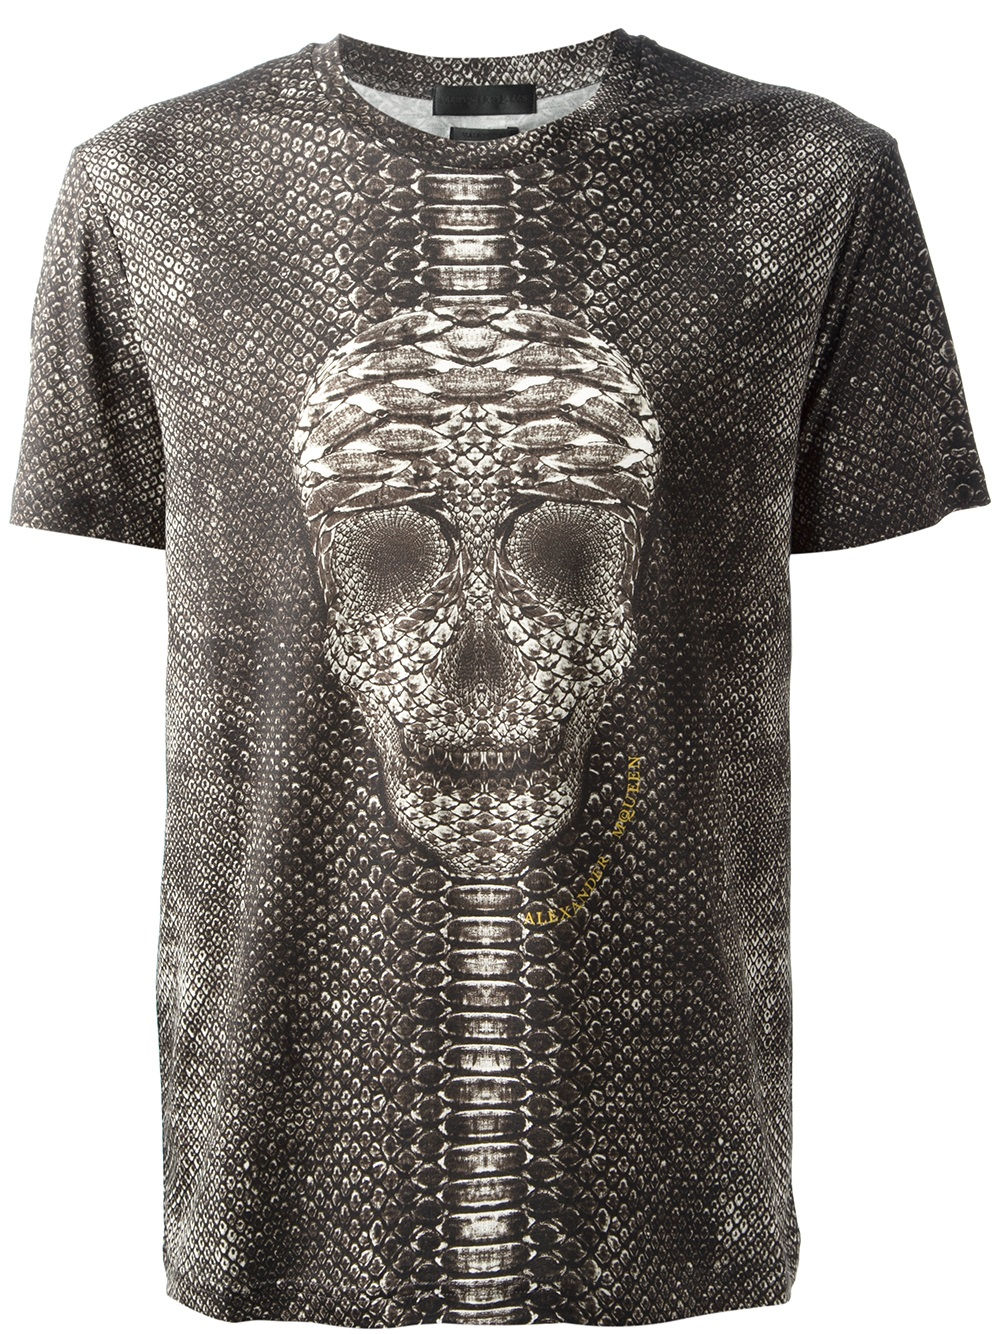 Alexander McQueen Snake Skin Print Skull T-shirt in Black for Men - Lyst